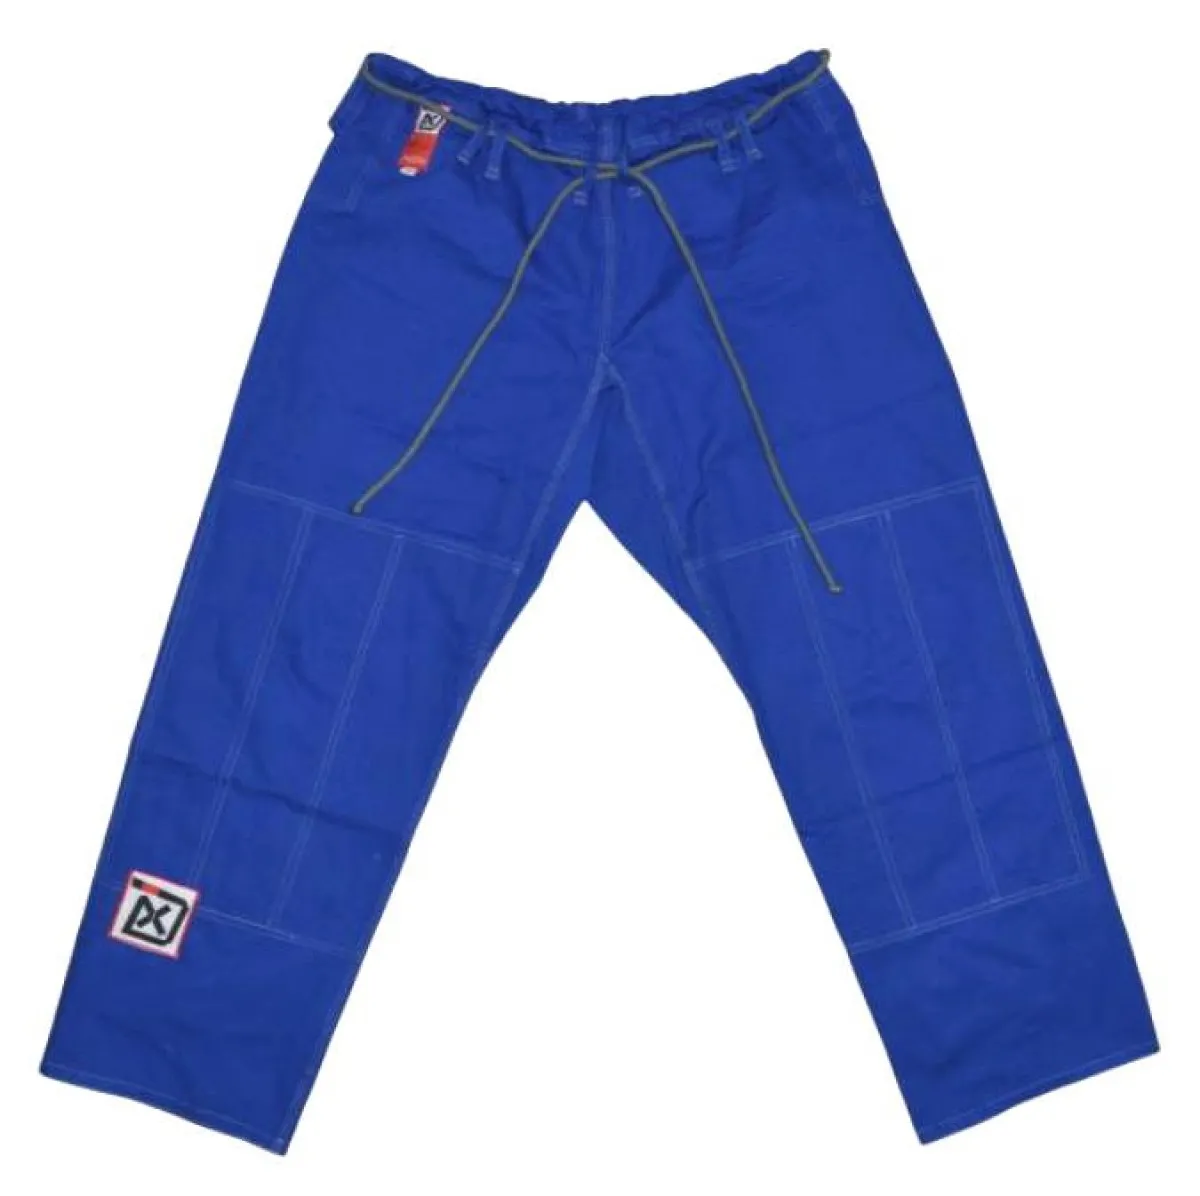 BJJ suit GRAB-N FIGHT blue